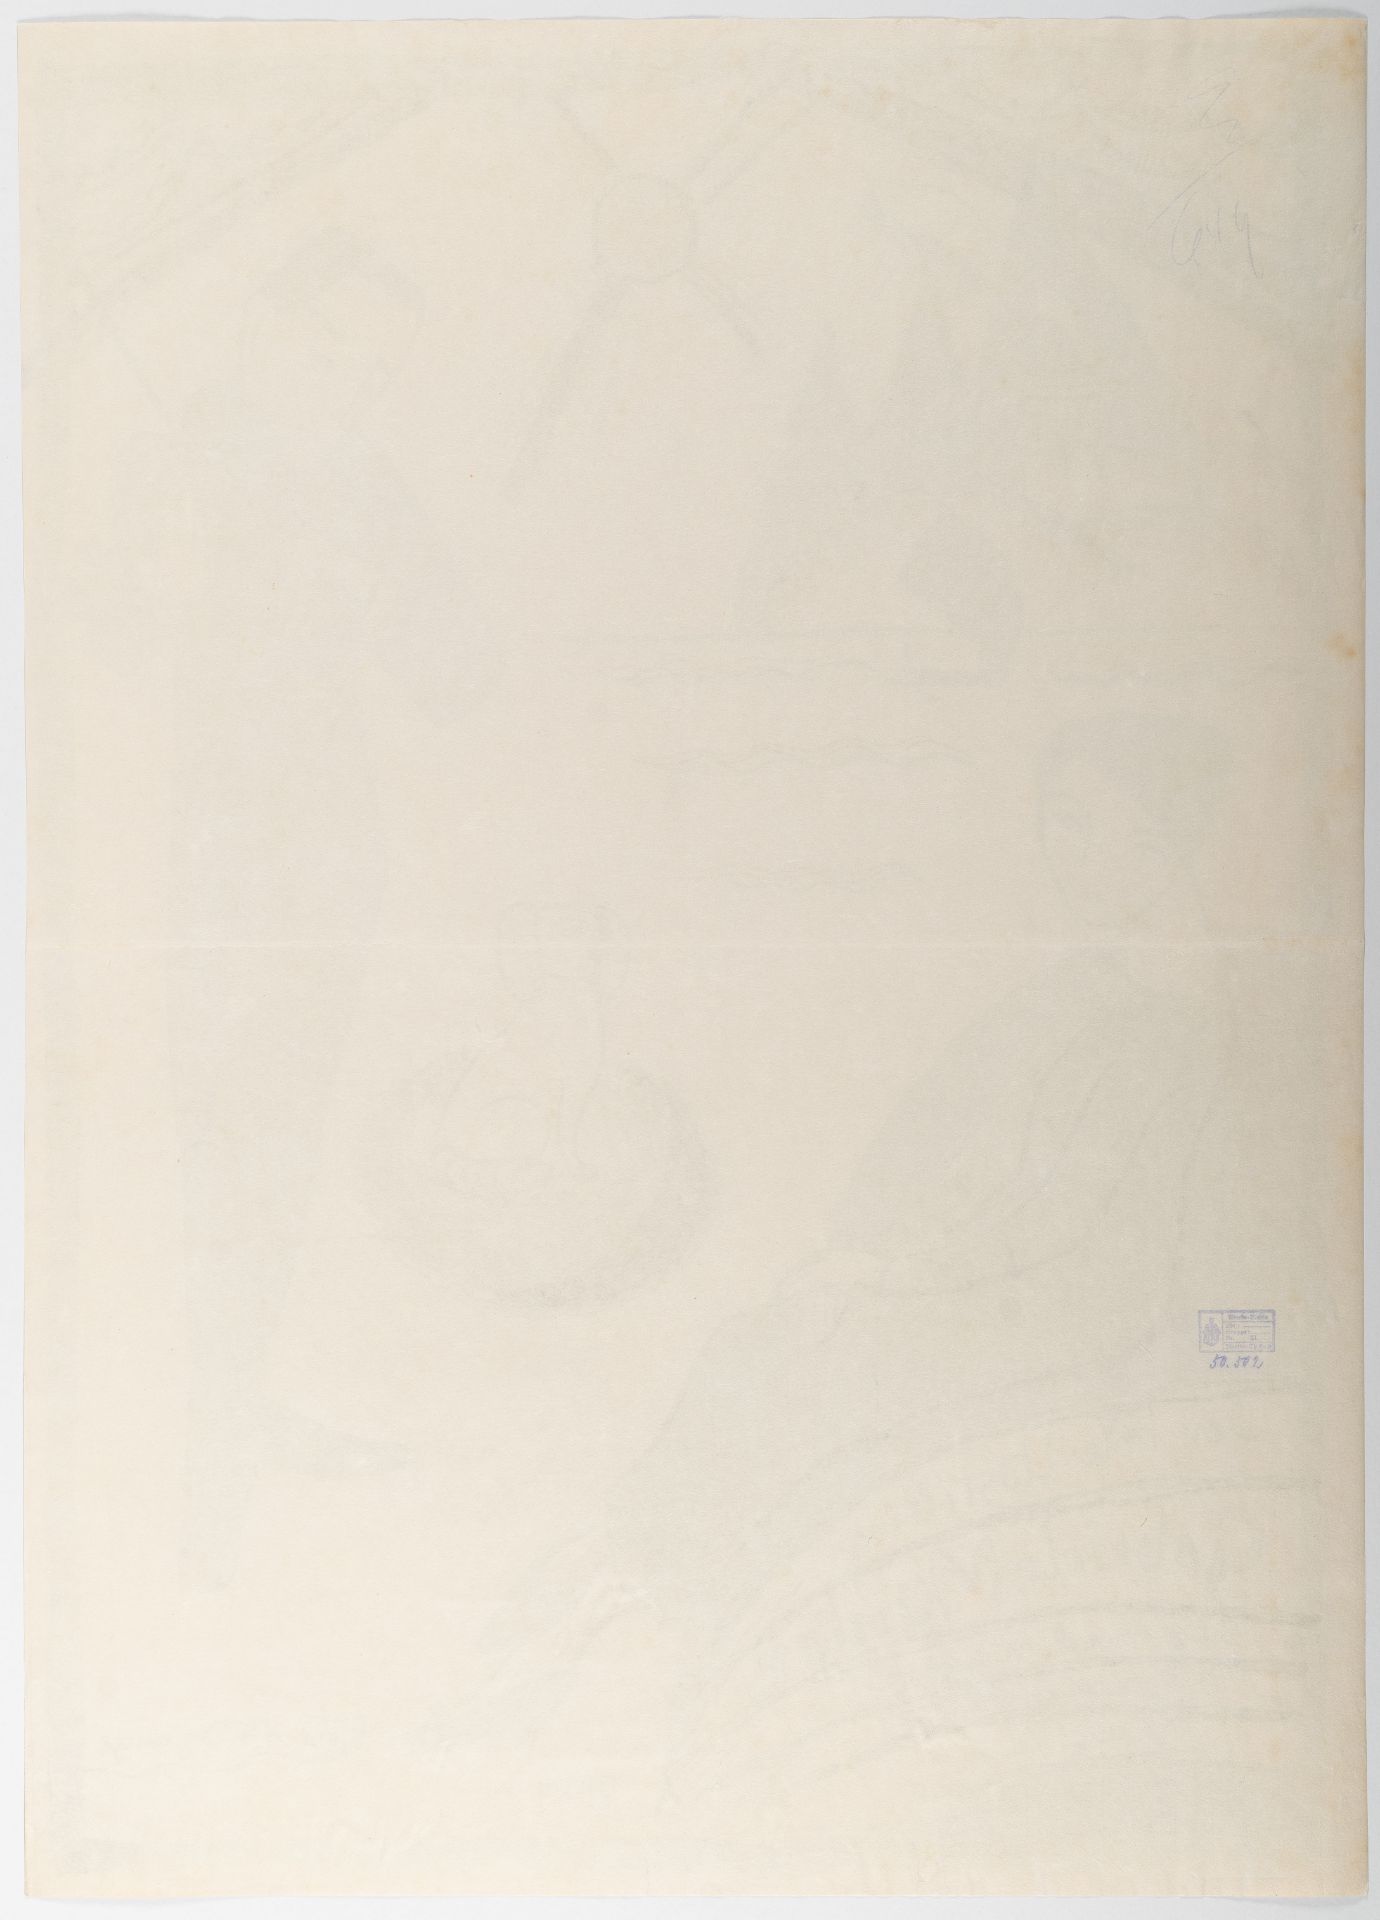 Gabriele Münter (1877 Berlin - Murnau 1962) – Plakat für die Gabriele Münter Ausstellung Kopenhagen - Bild 3 aus 3